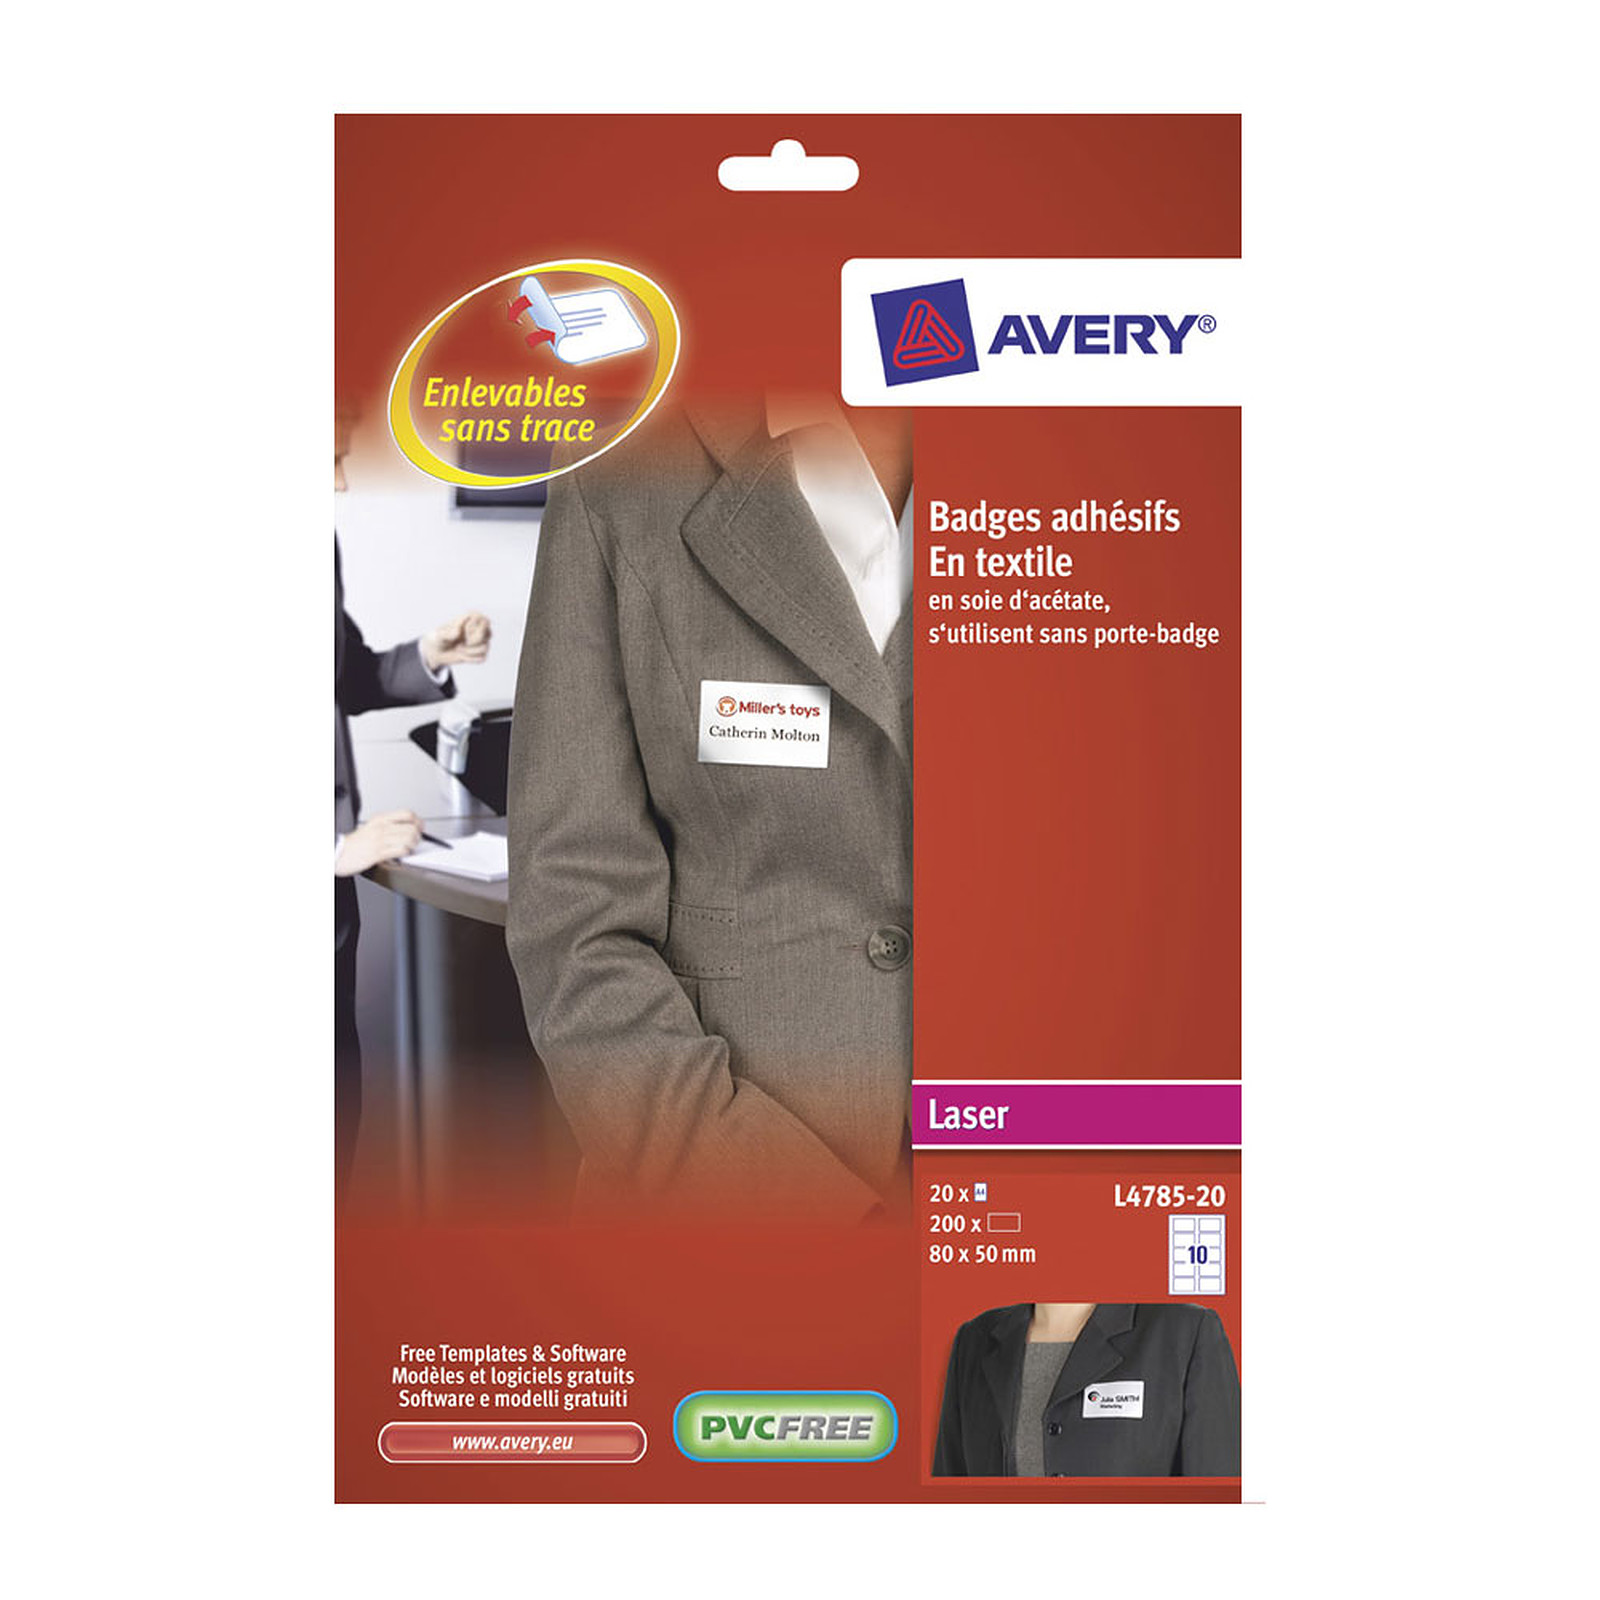 Avery Badges adhesifs en soie d'acetate x 200 - Etiquette Avery